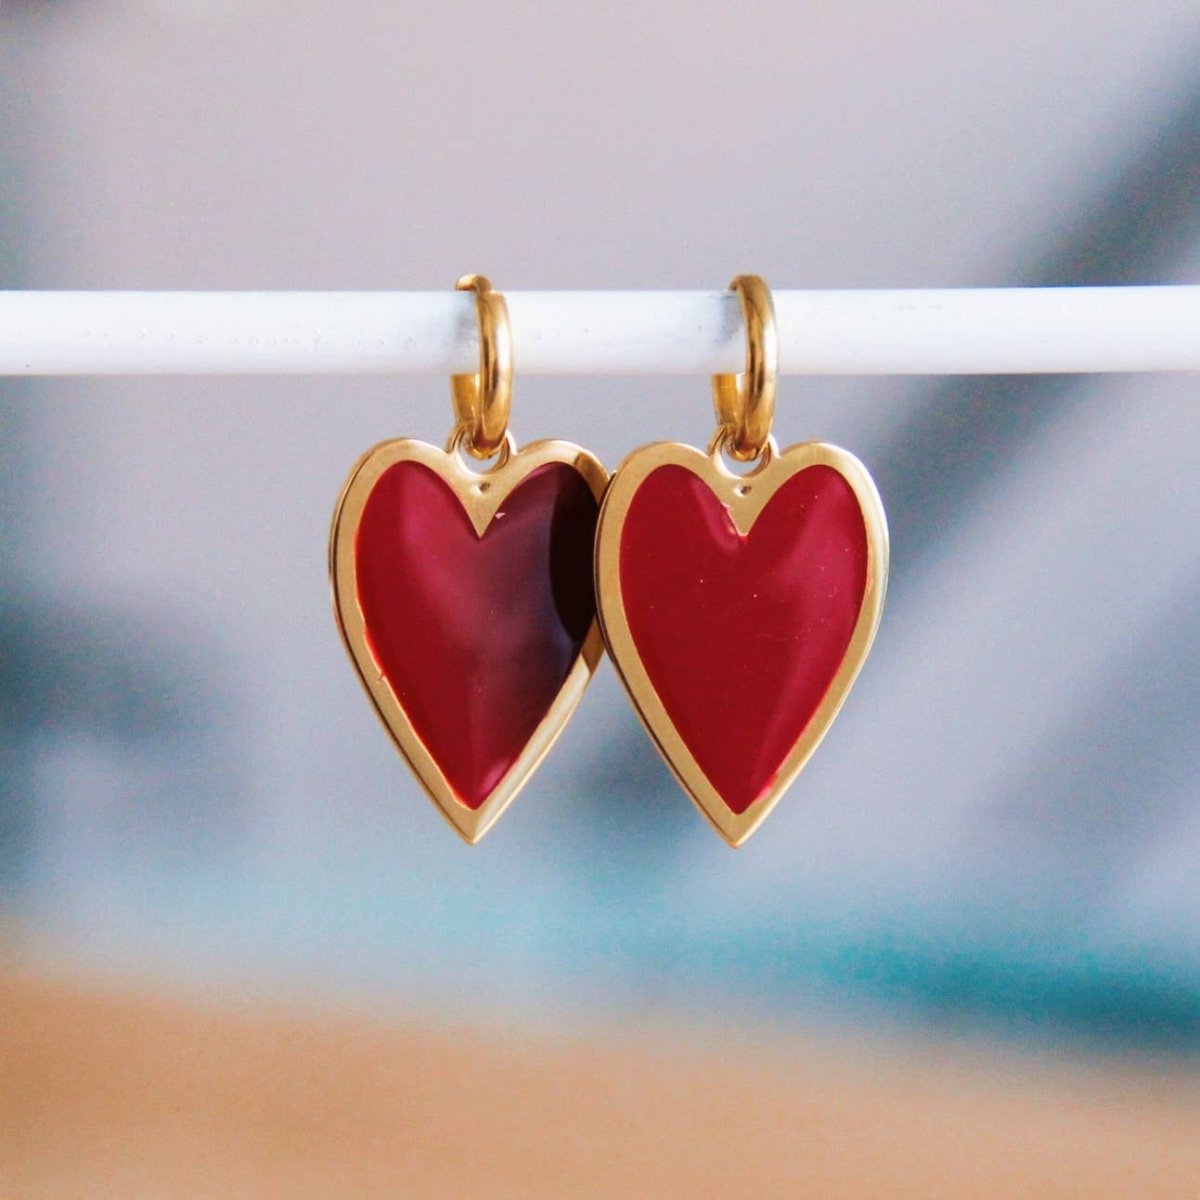 Creole in acciaio con cuore lungo colorato - bordeaux/oro - Infinity Concept Store